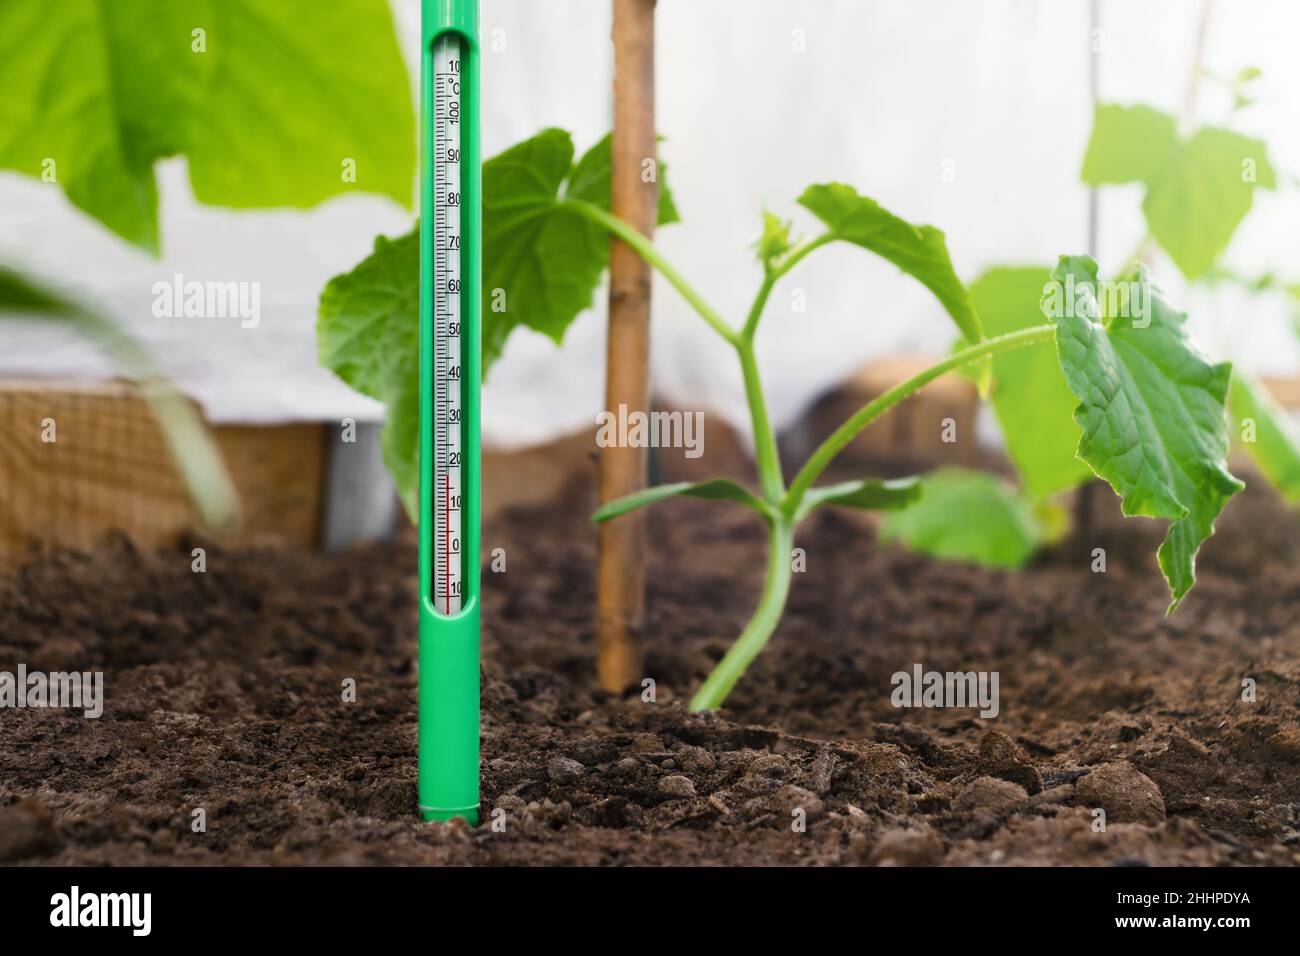 Mesure de la température du sol dans un lit de jardin avec des semis de concombre. Contrôle de la température pour la culture des légumes Banque D'Images